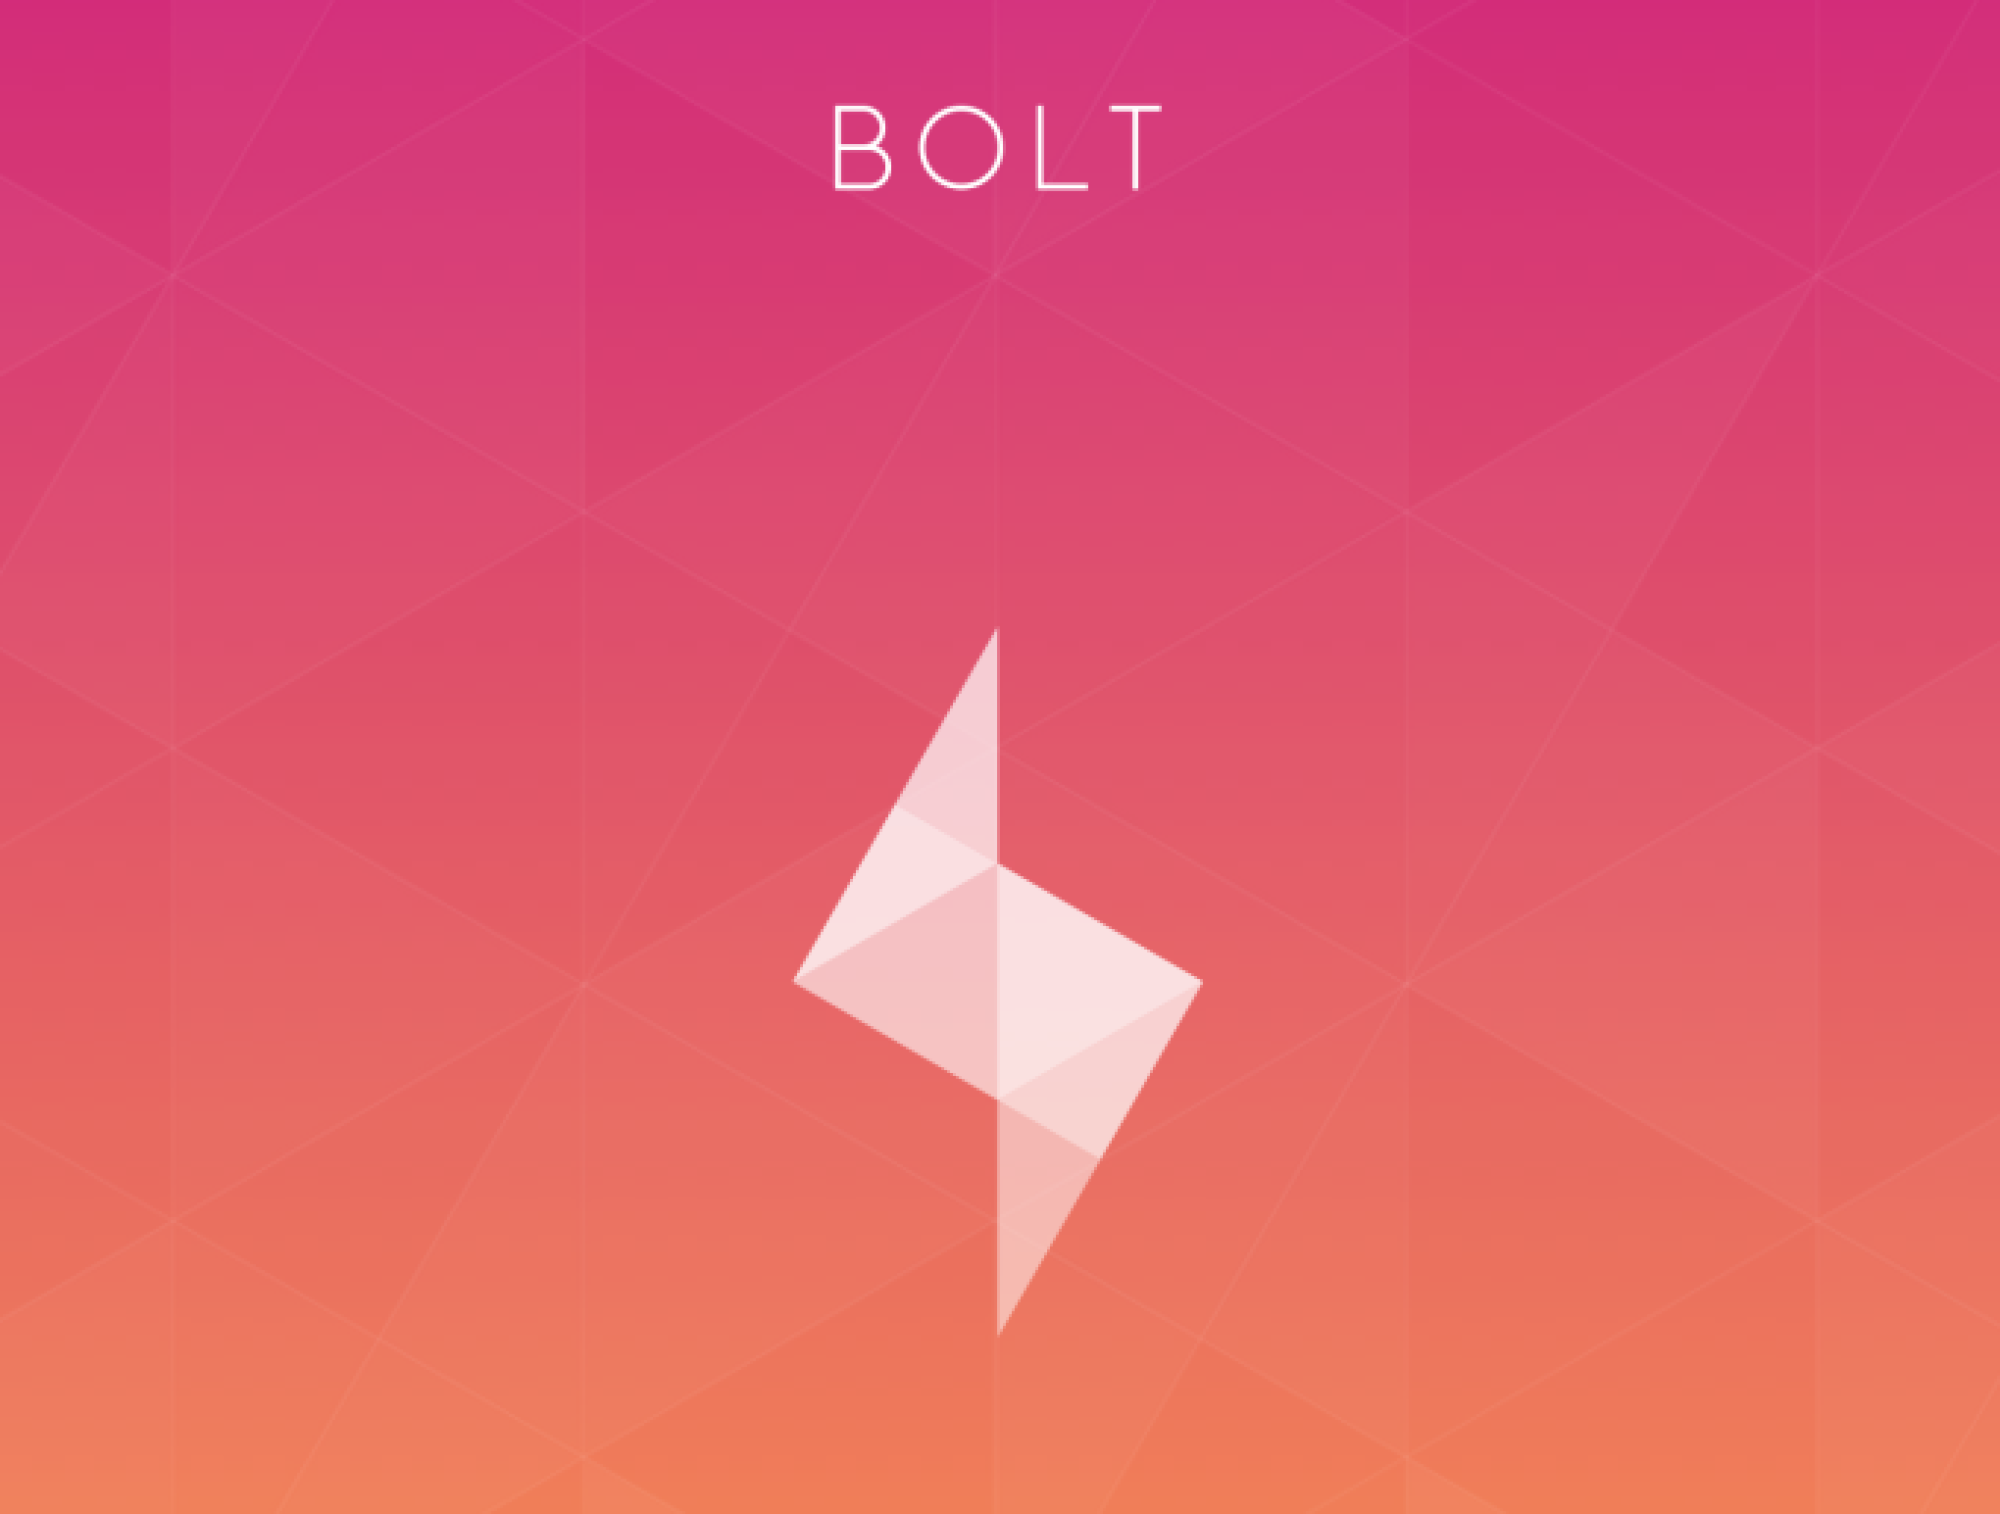 Instagram-lancia-nuova-app-Bolt-per-competere-con-Snapchat